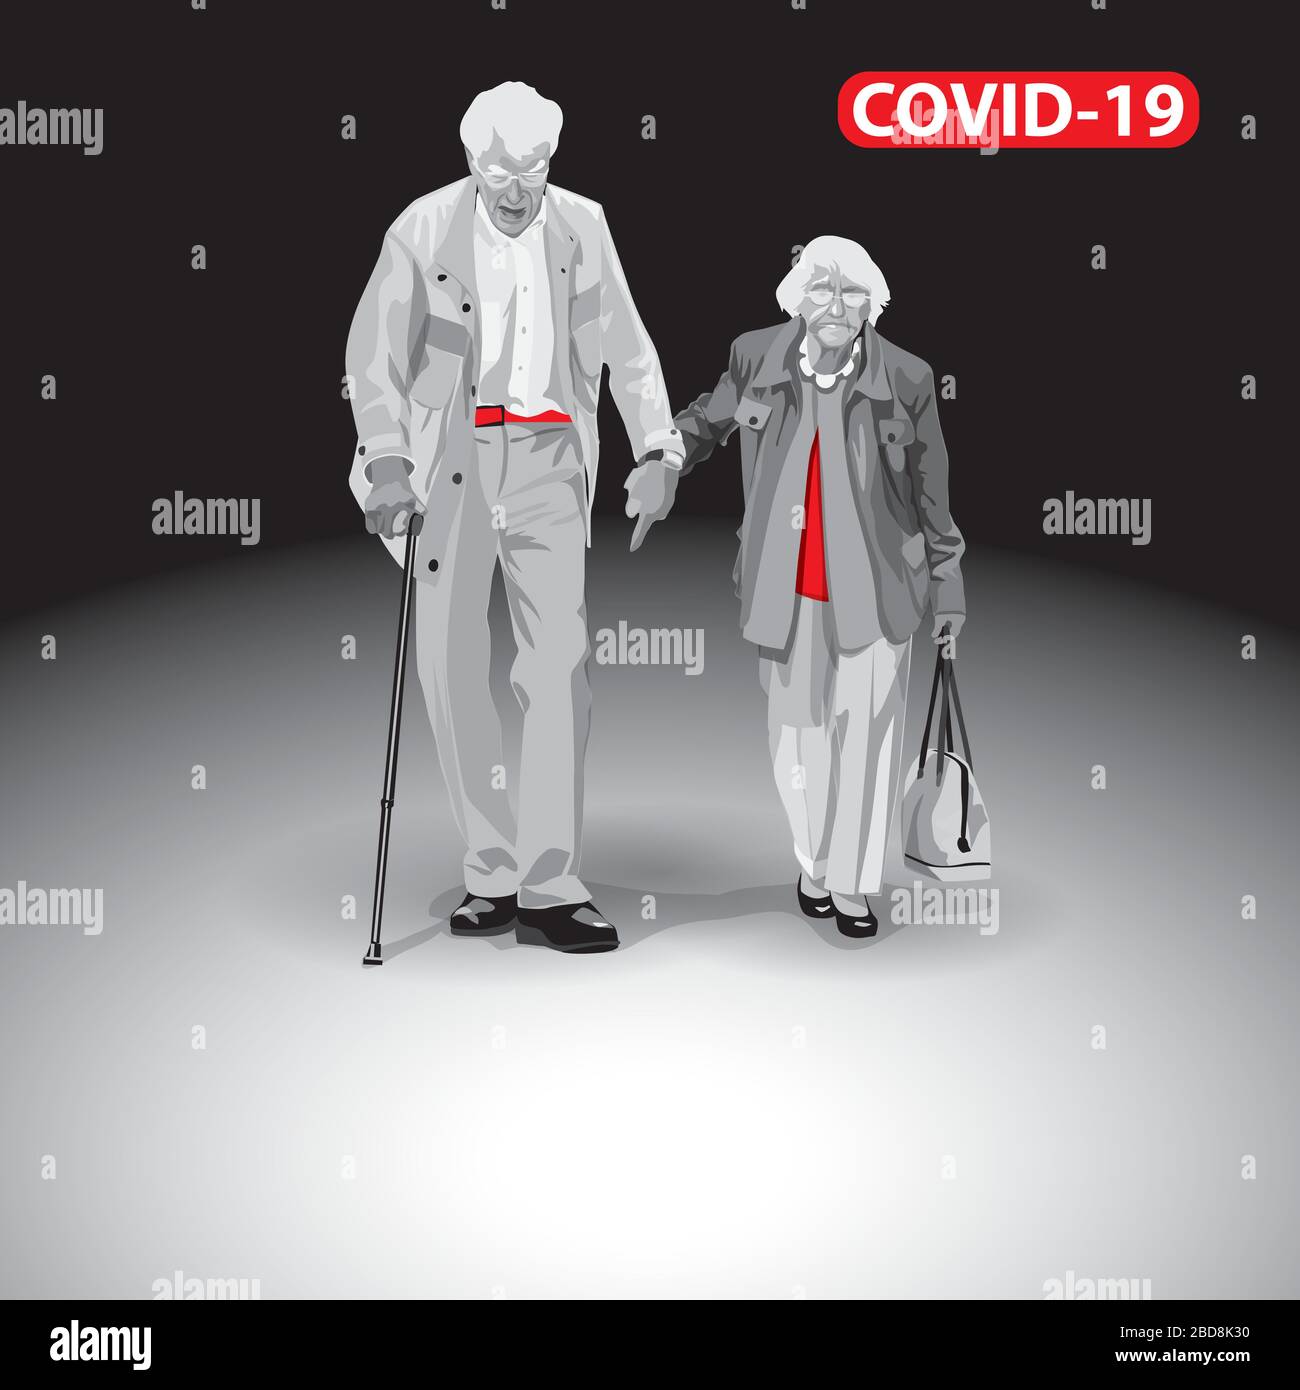 Anziani a rischio. Coronavirus COVID-19. Immagini chiave di 2019-nCoV pandemico. Un paio di anziani. Le persone vanno in mano. Il pubblico di destinazione per me Illustrazione Vettoriale